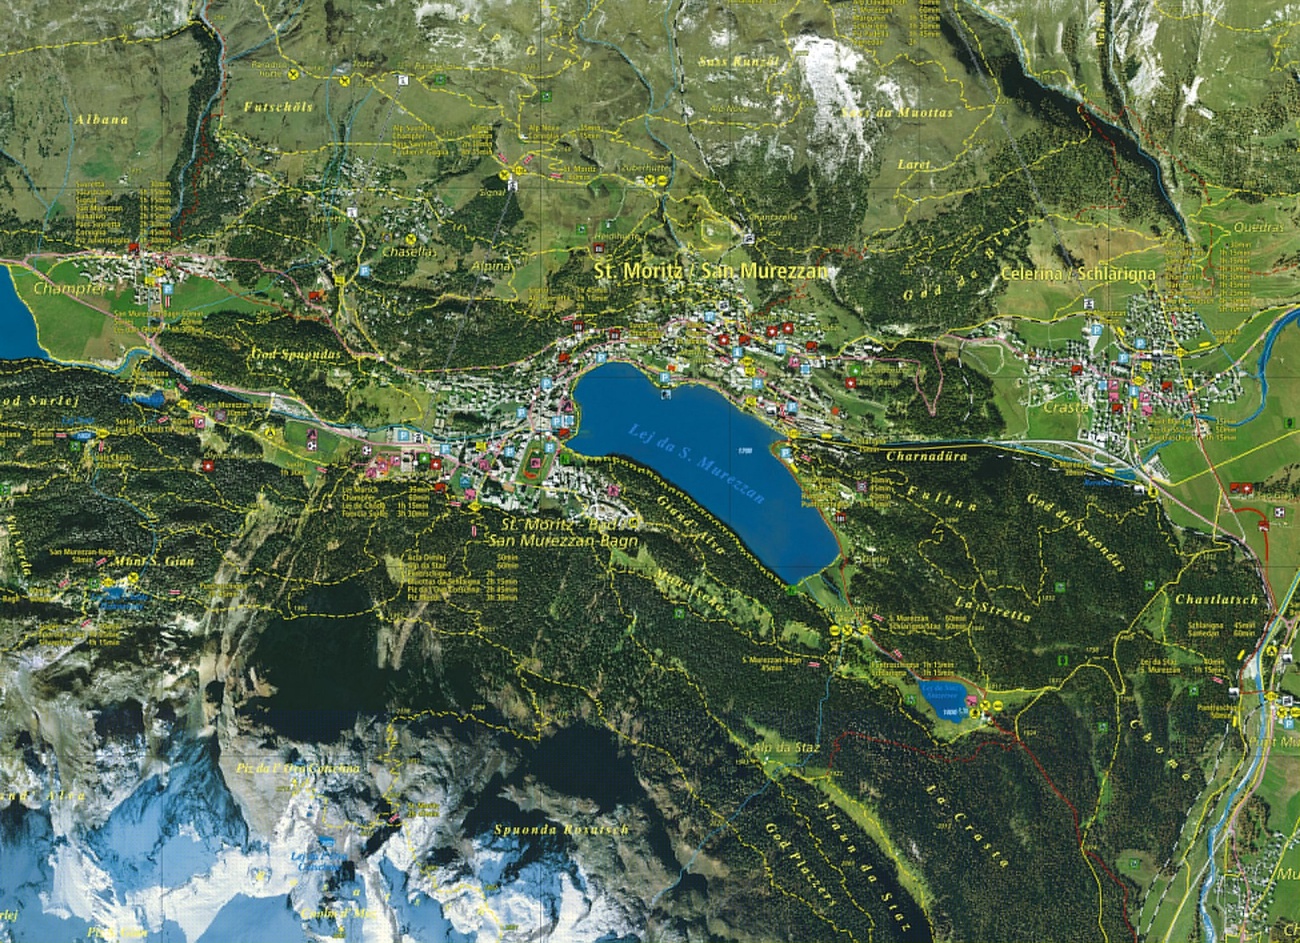 Цифровая карта Санкт-Морица, объединяющая аэрофотоснимки с топографическими элементами, созданная Endoxon в 2001 г.